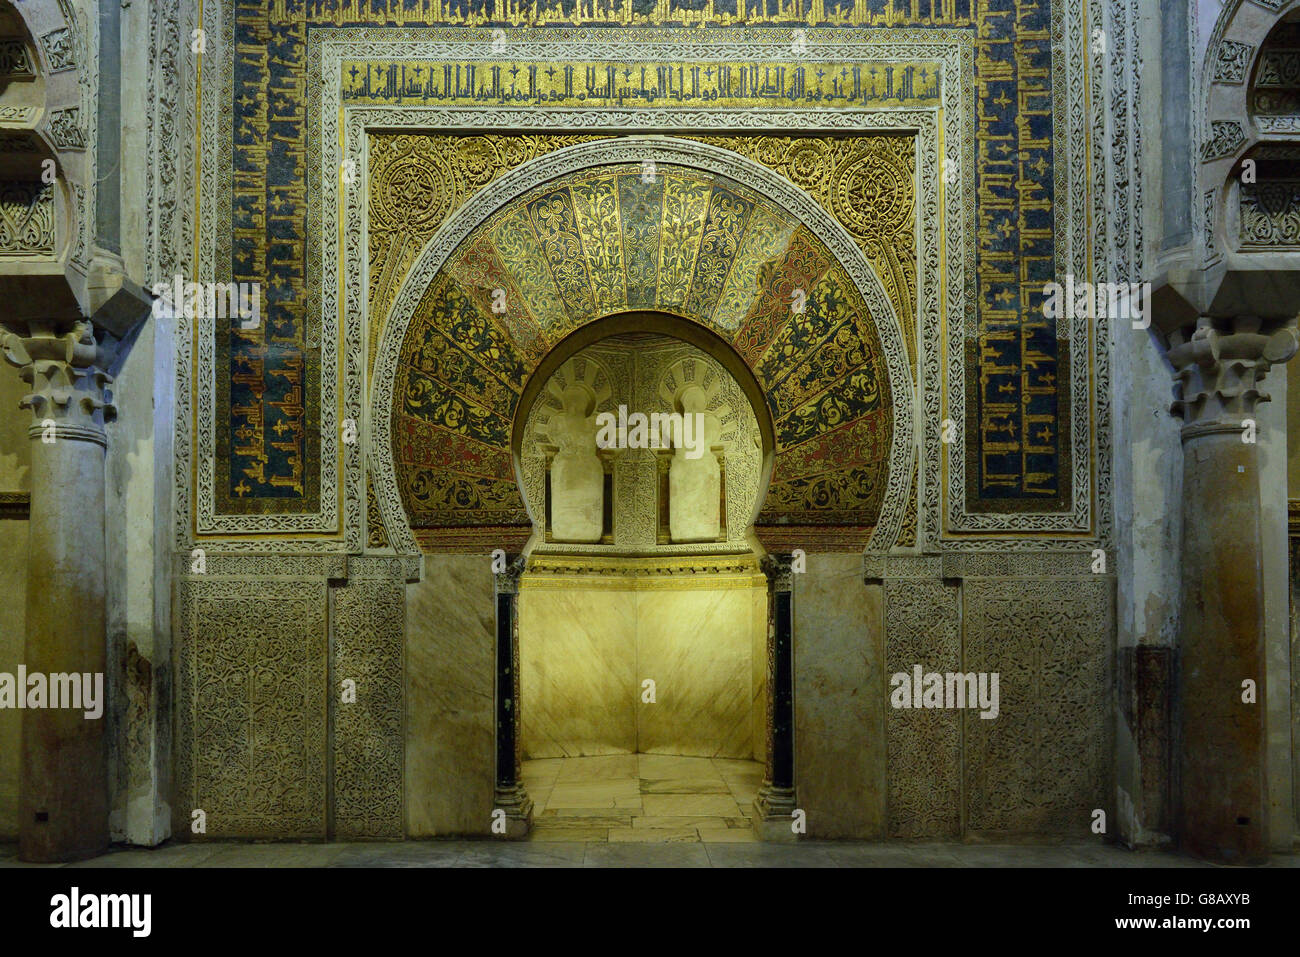 Nouveau à l'intérieur de la Mezquita, Mihrab, Cathédrale de Cordoue, Cordoue, Andalousie, Espagne Banque D'Images